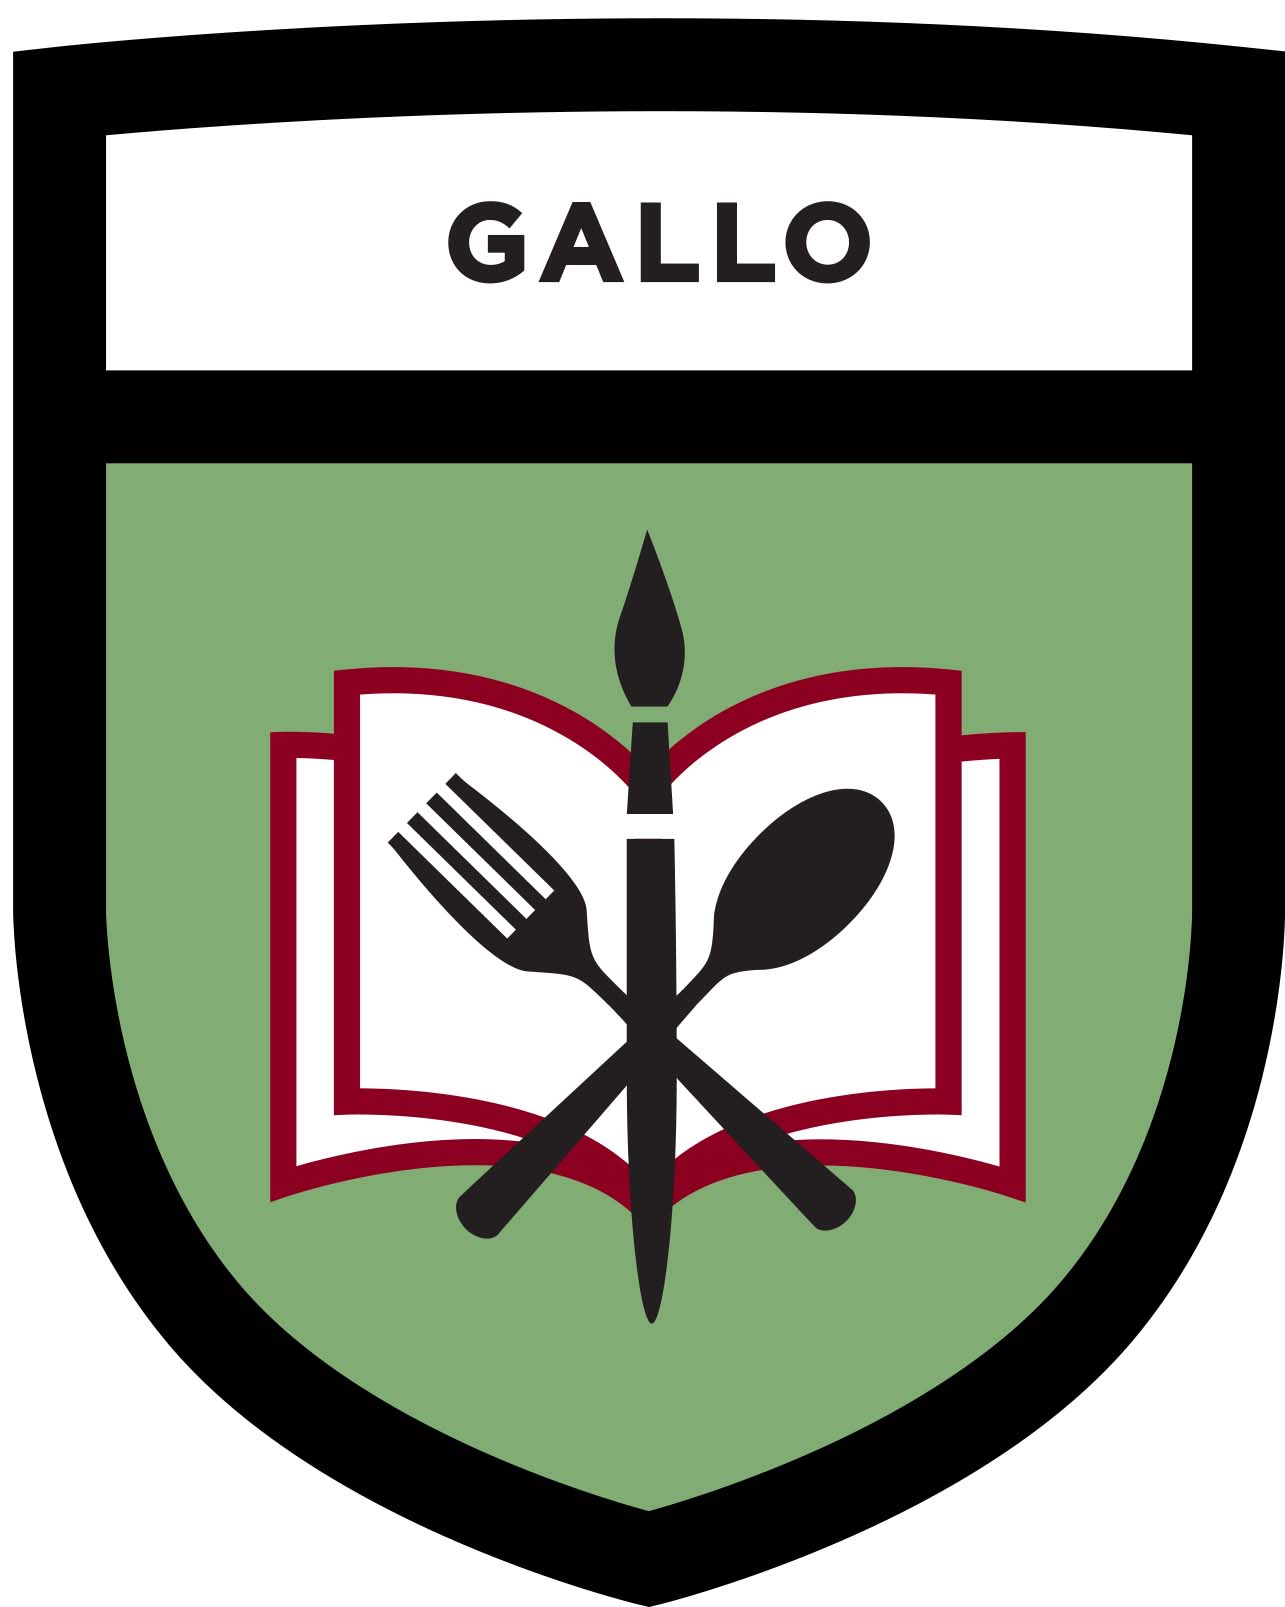 Gallo Shield